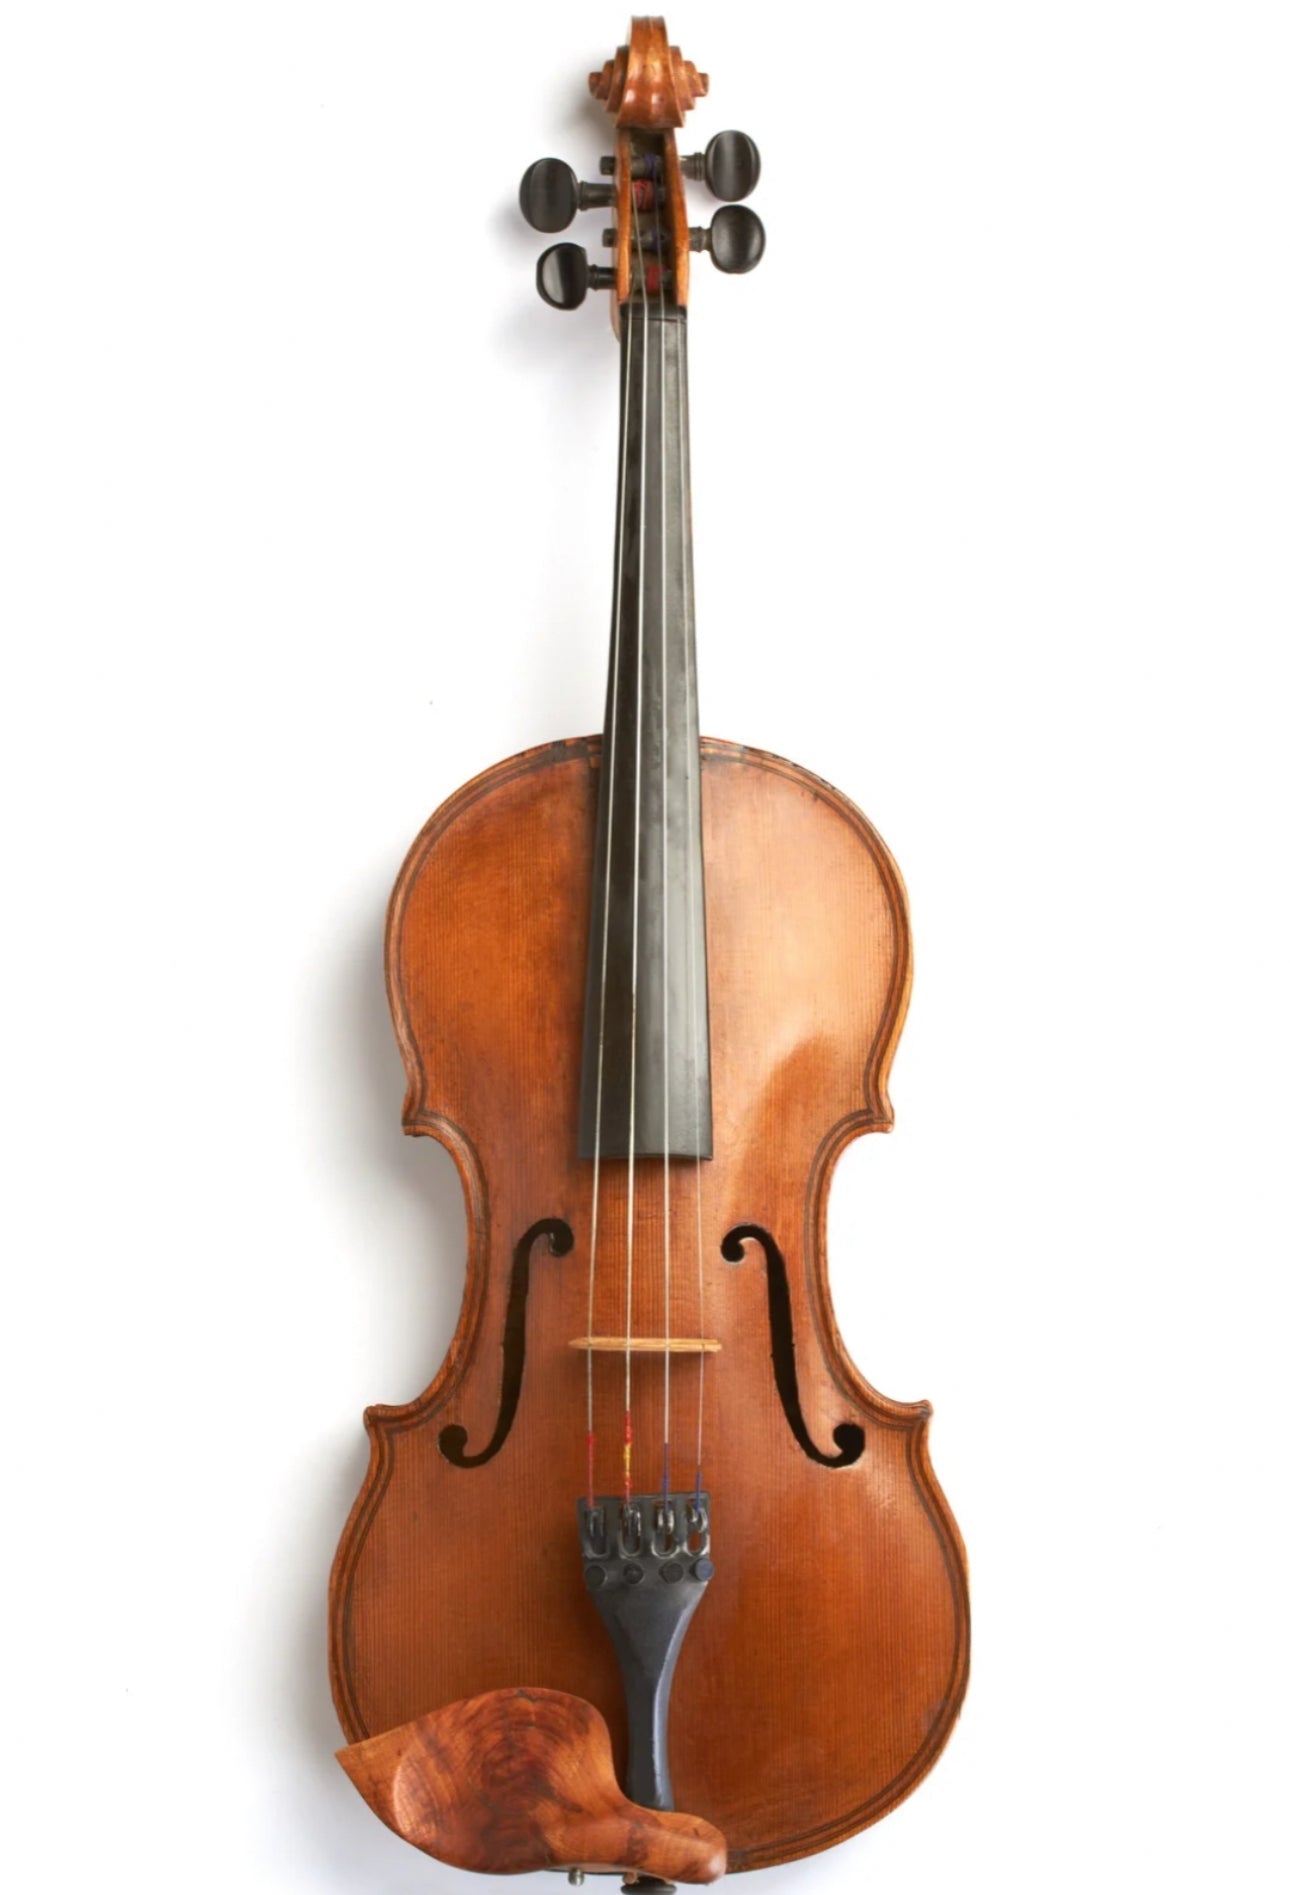 Violino Avançado “Brillante” CV09-A